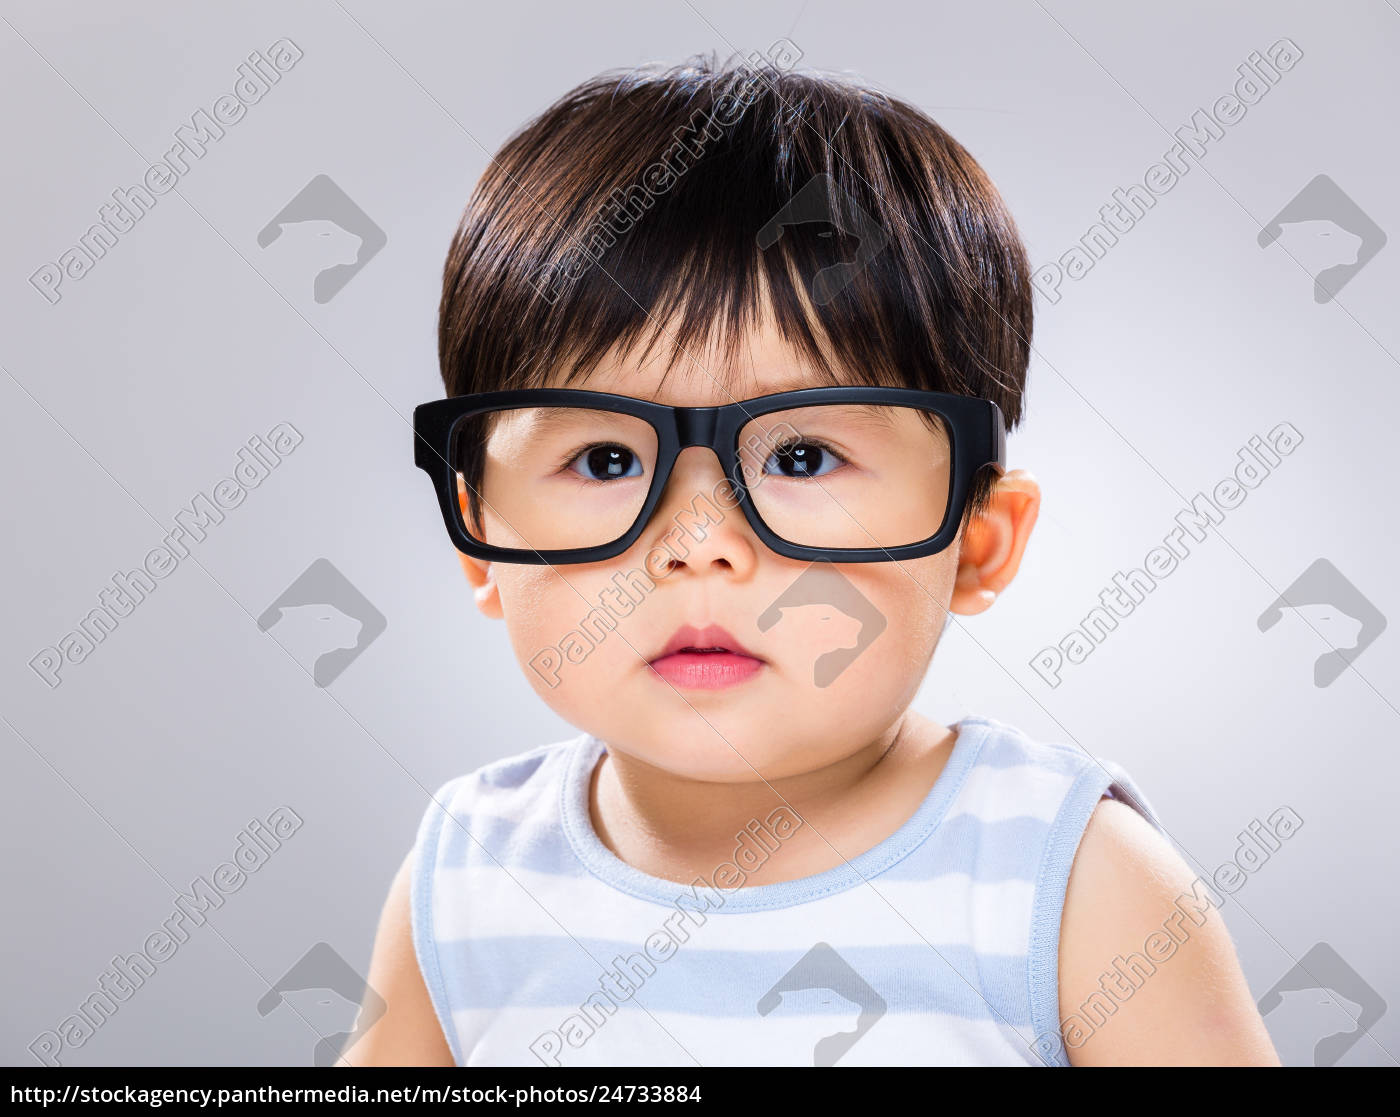 Baby dreng med sorte briller Stockphoto #24733884 | PantherMedia Billedbureau